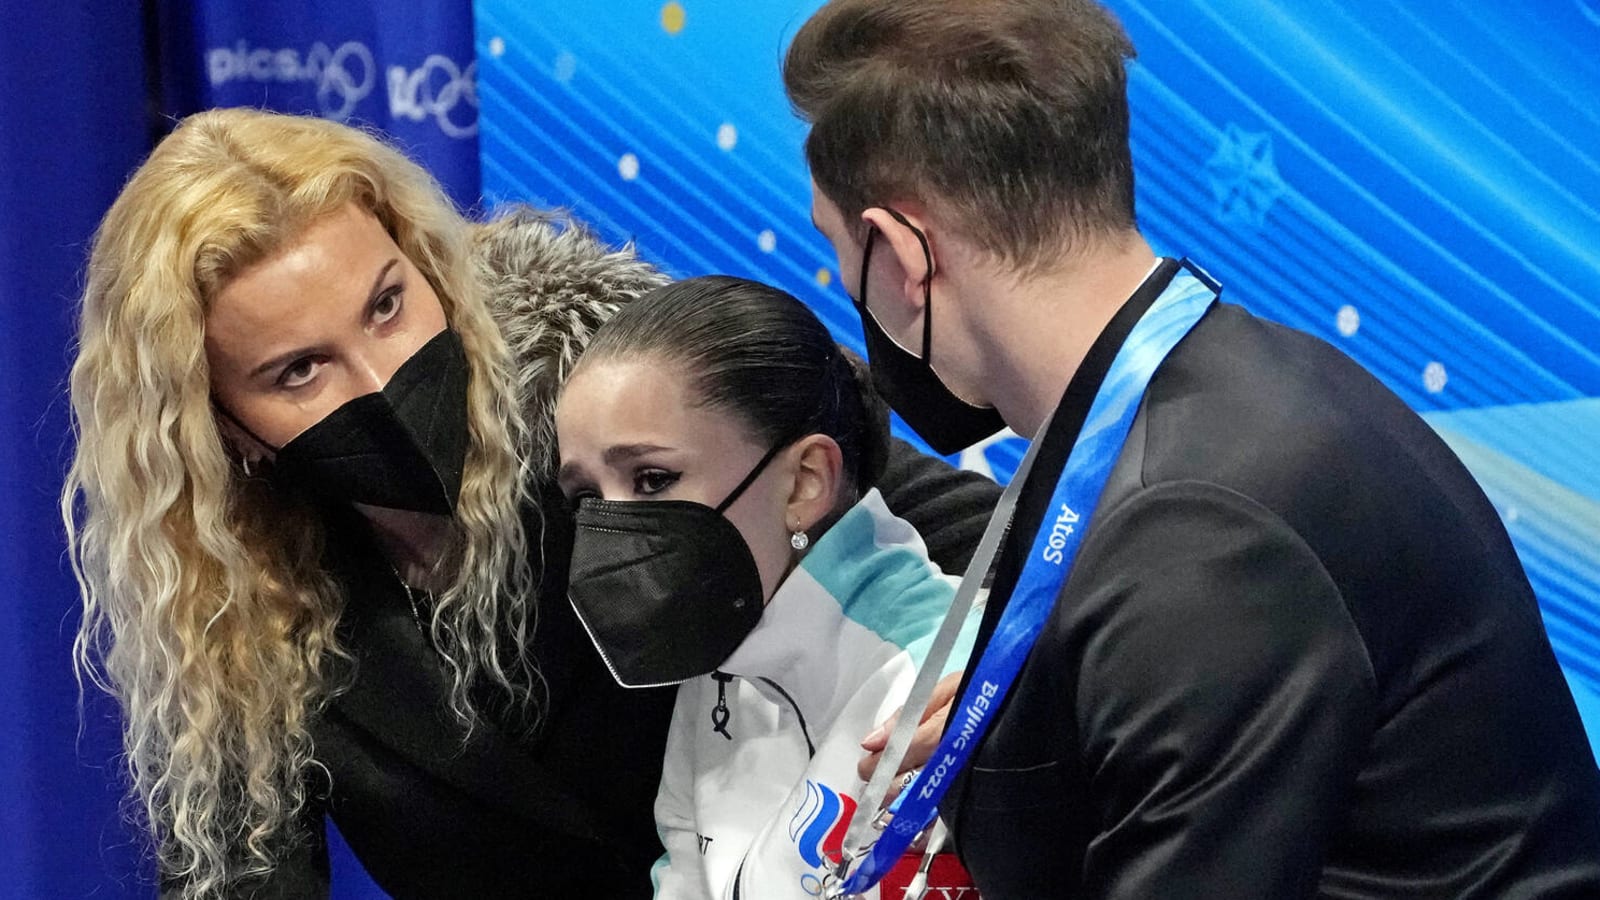 IOC prez rips Russian coach for treatment of Kamila Valieva